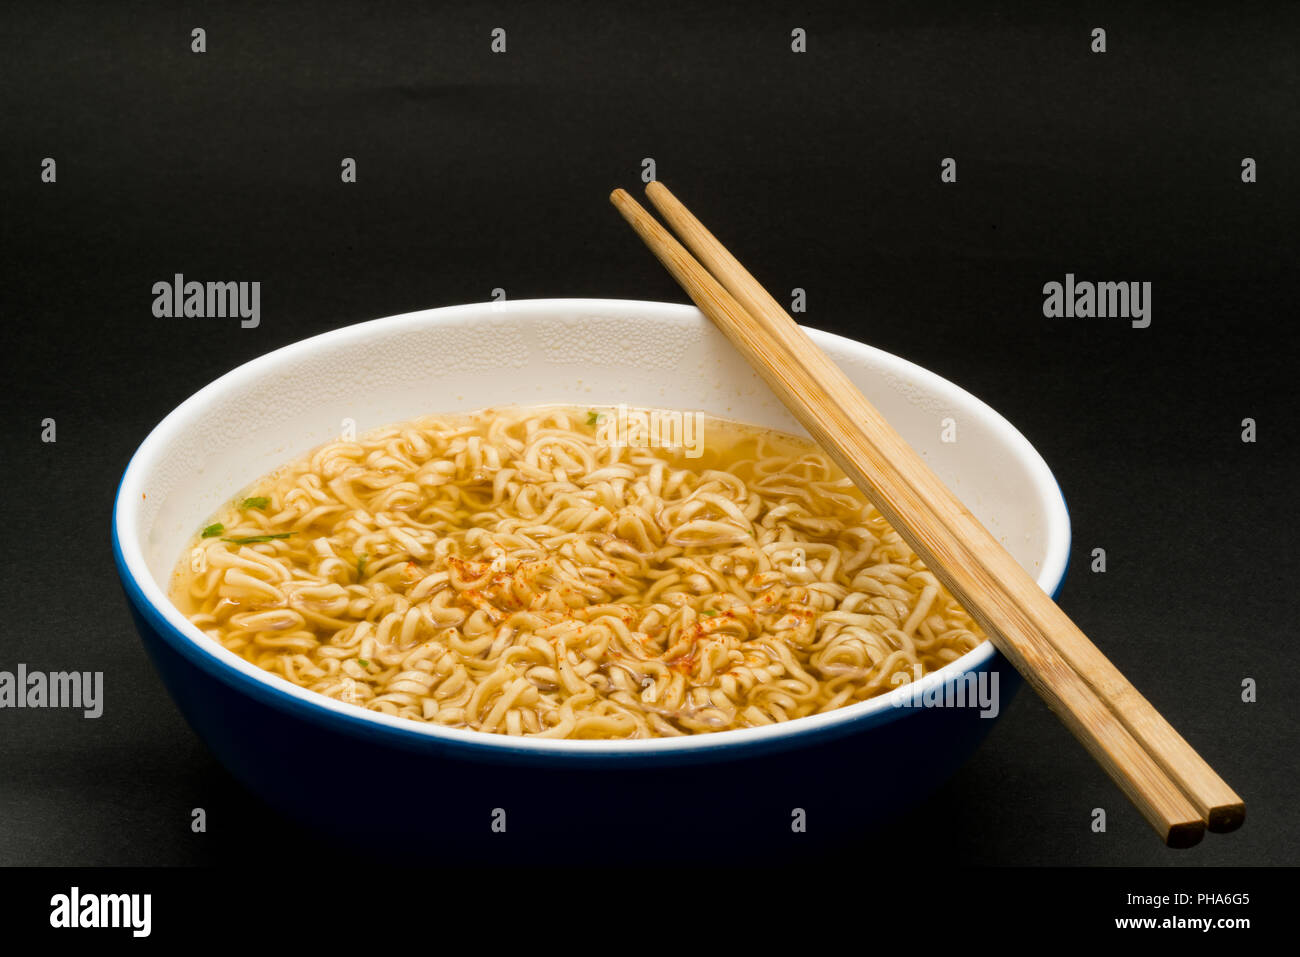 Cucinato inatant riso tagliatelle in una ciotola Foto Stock